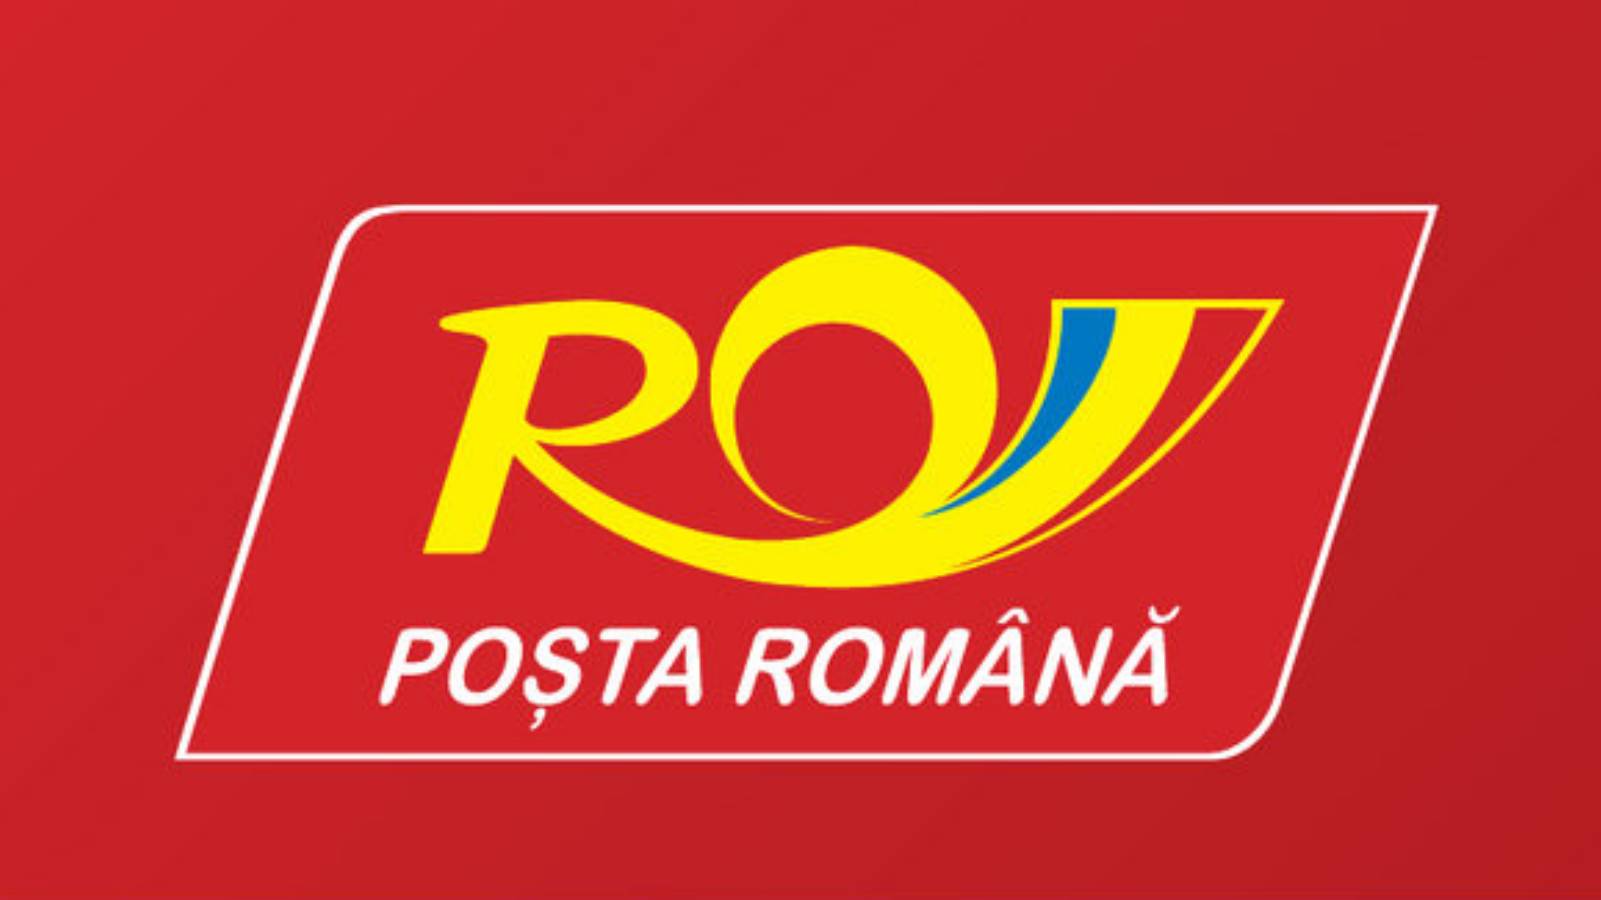 Roemeense postkaart